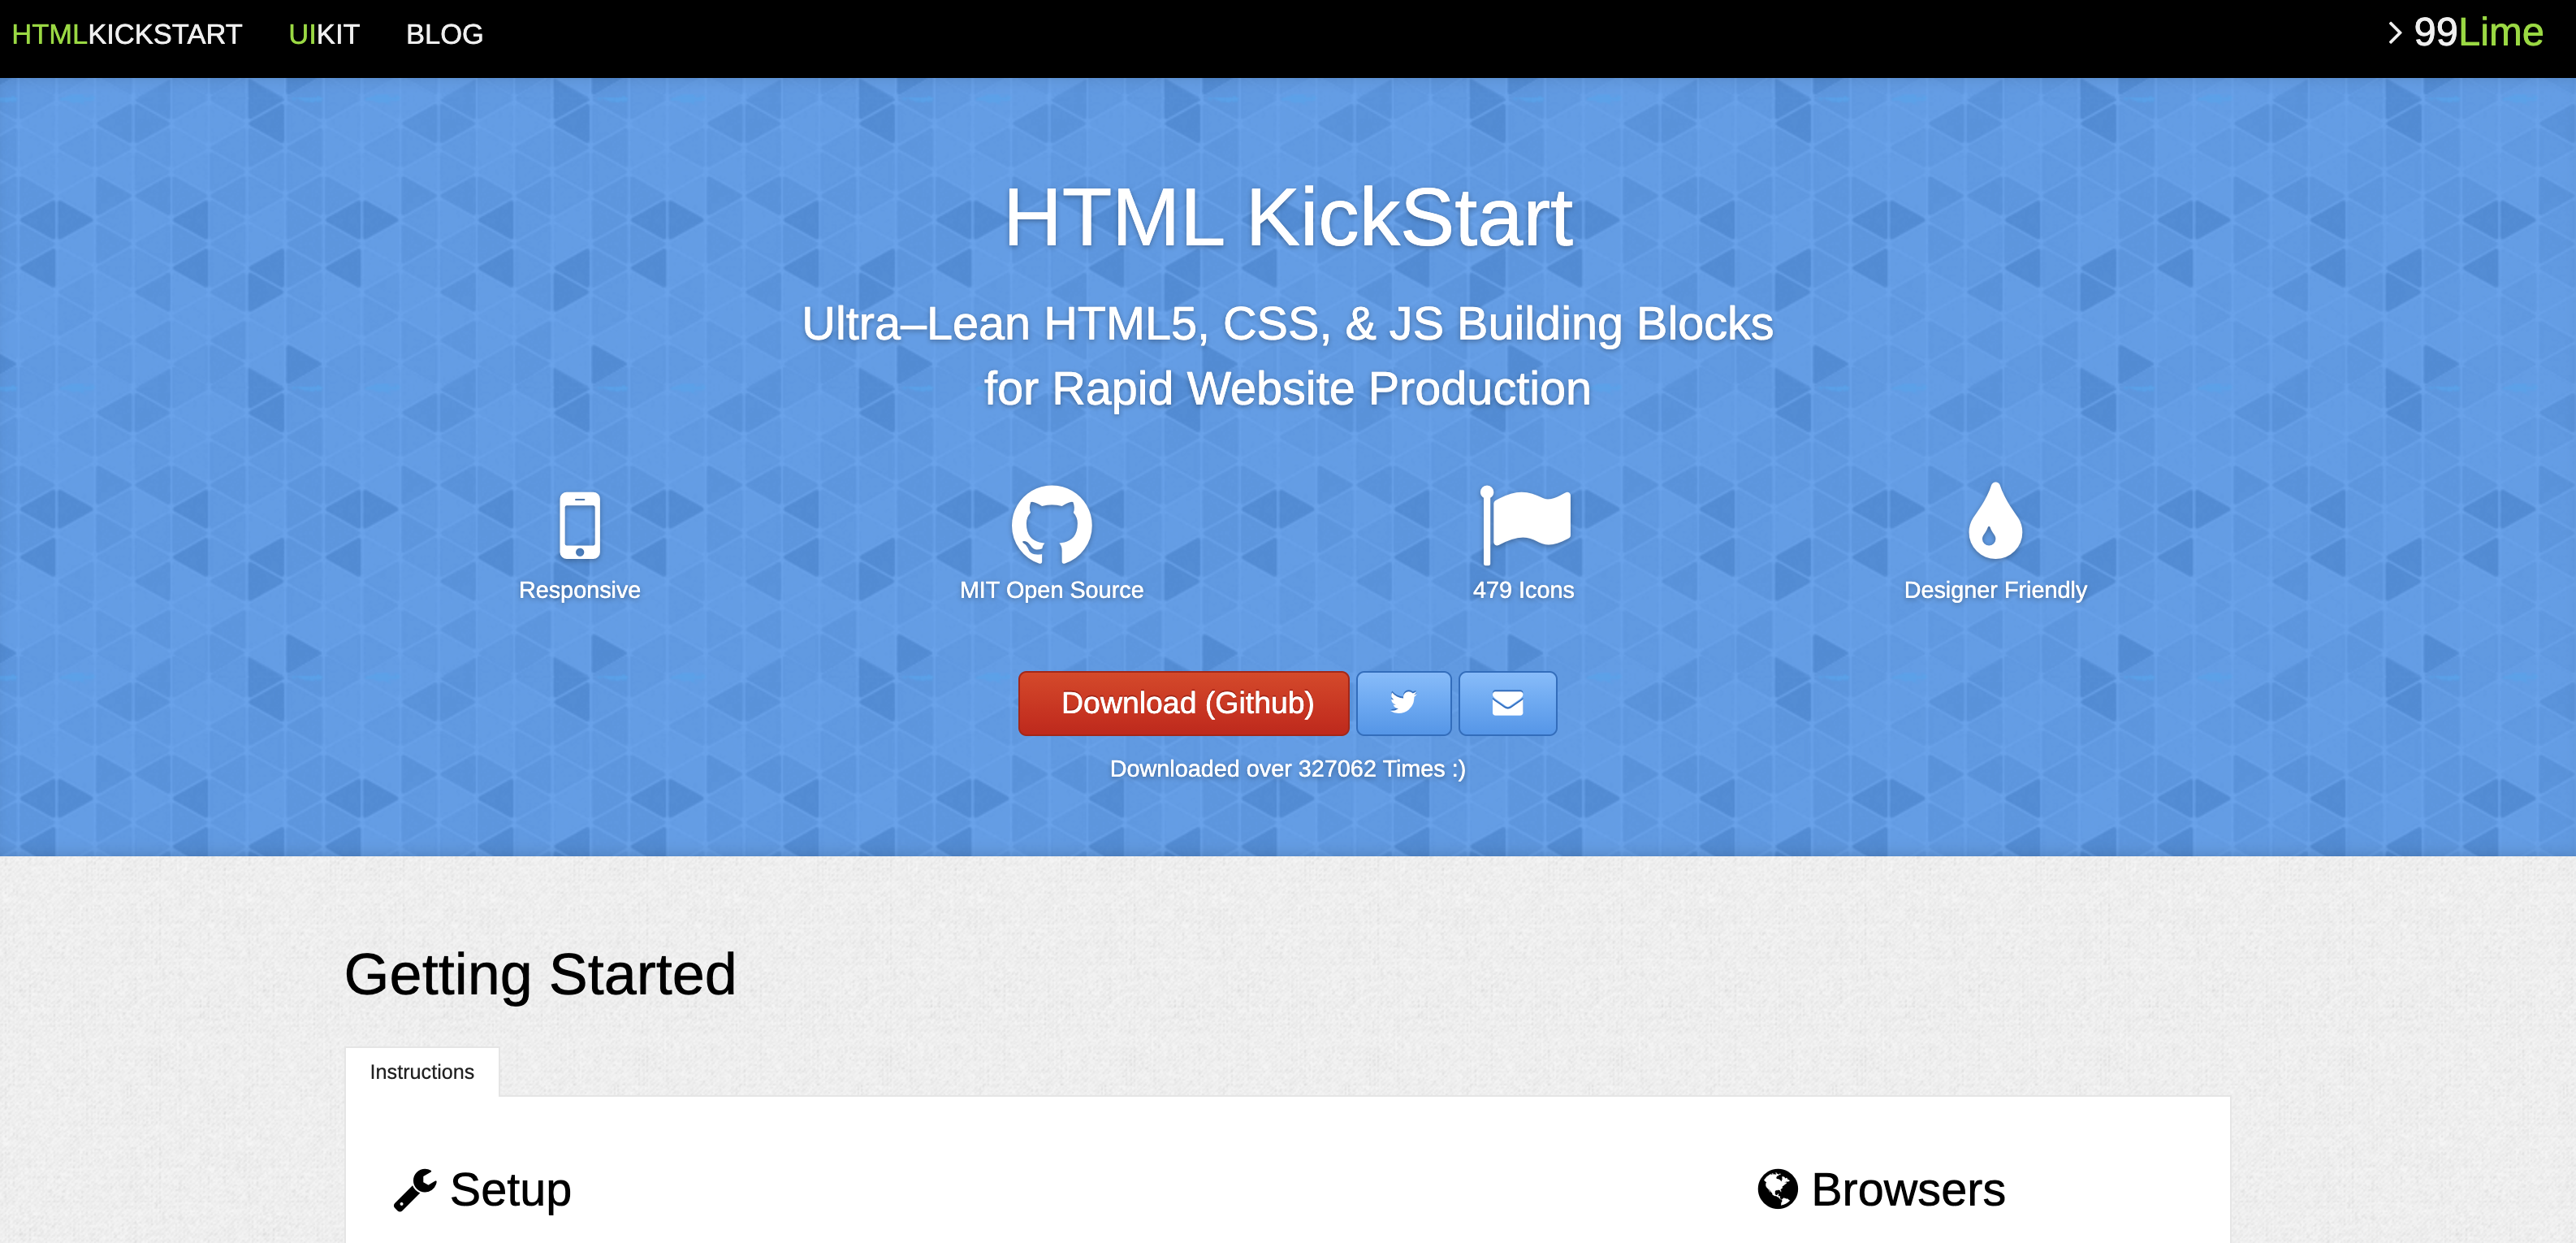 HTML KickStart